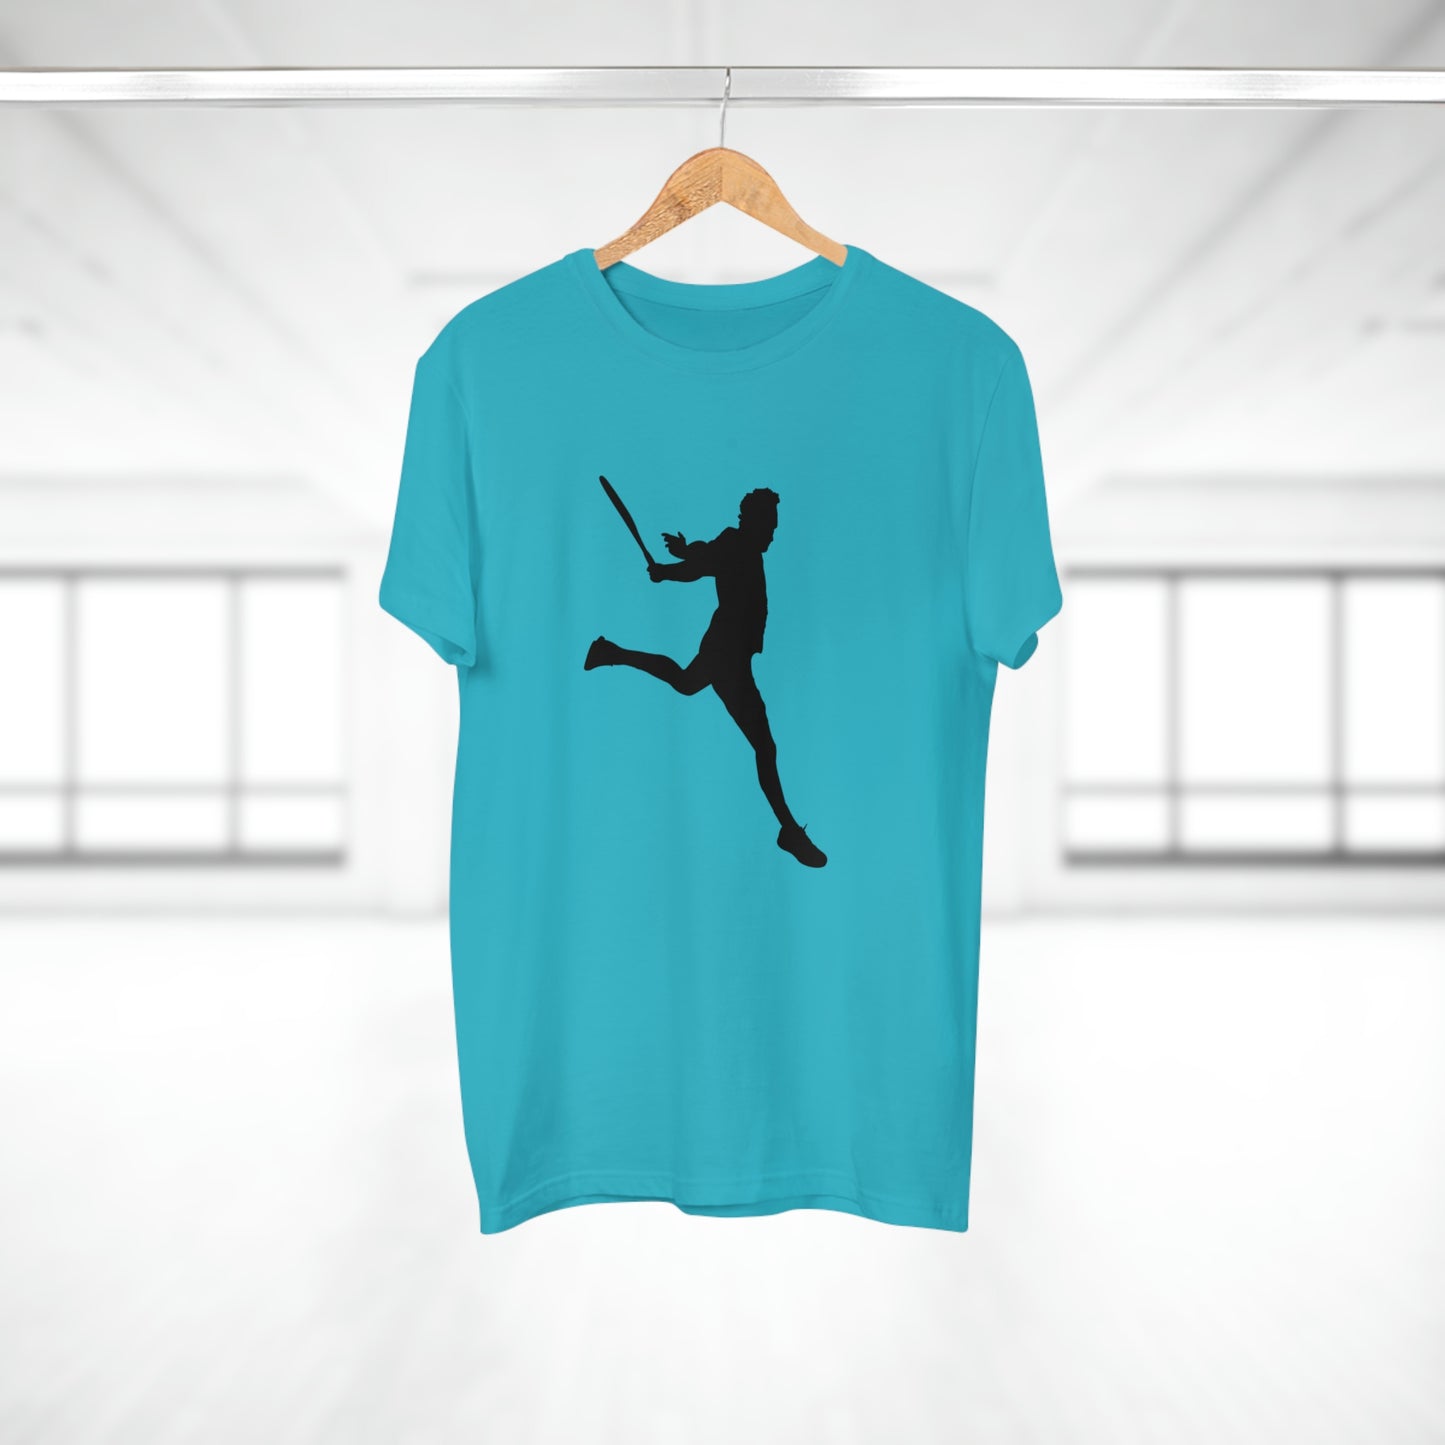 Tennis Legend - Federer - Men's T-shirt